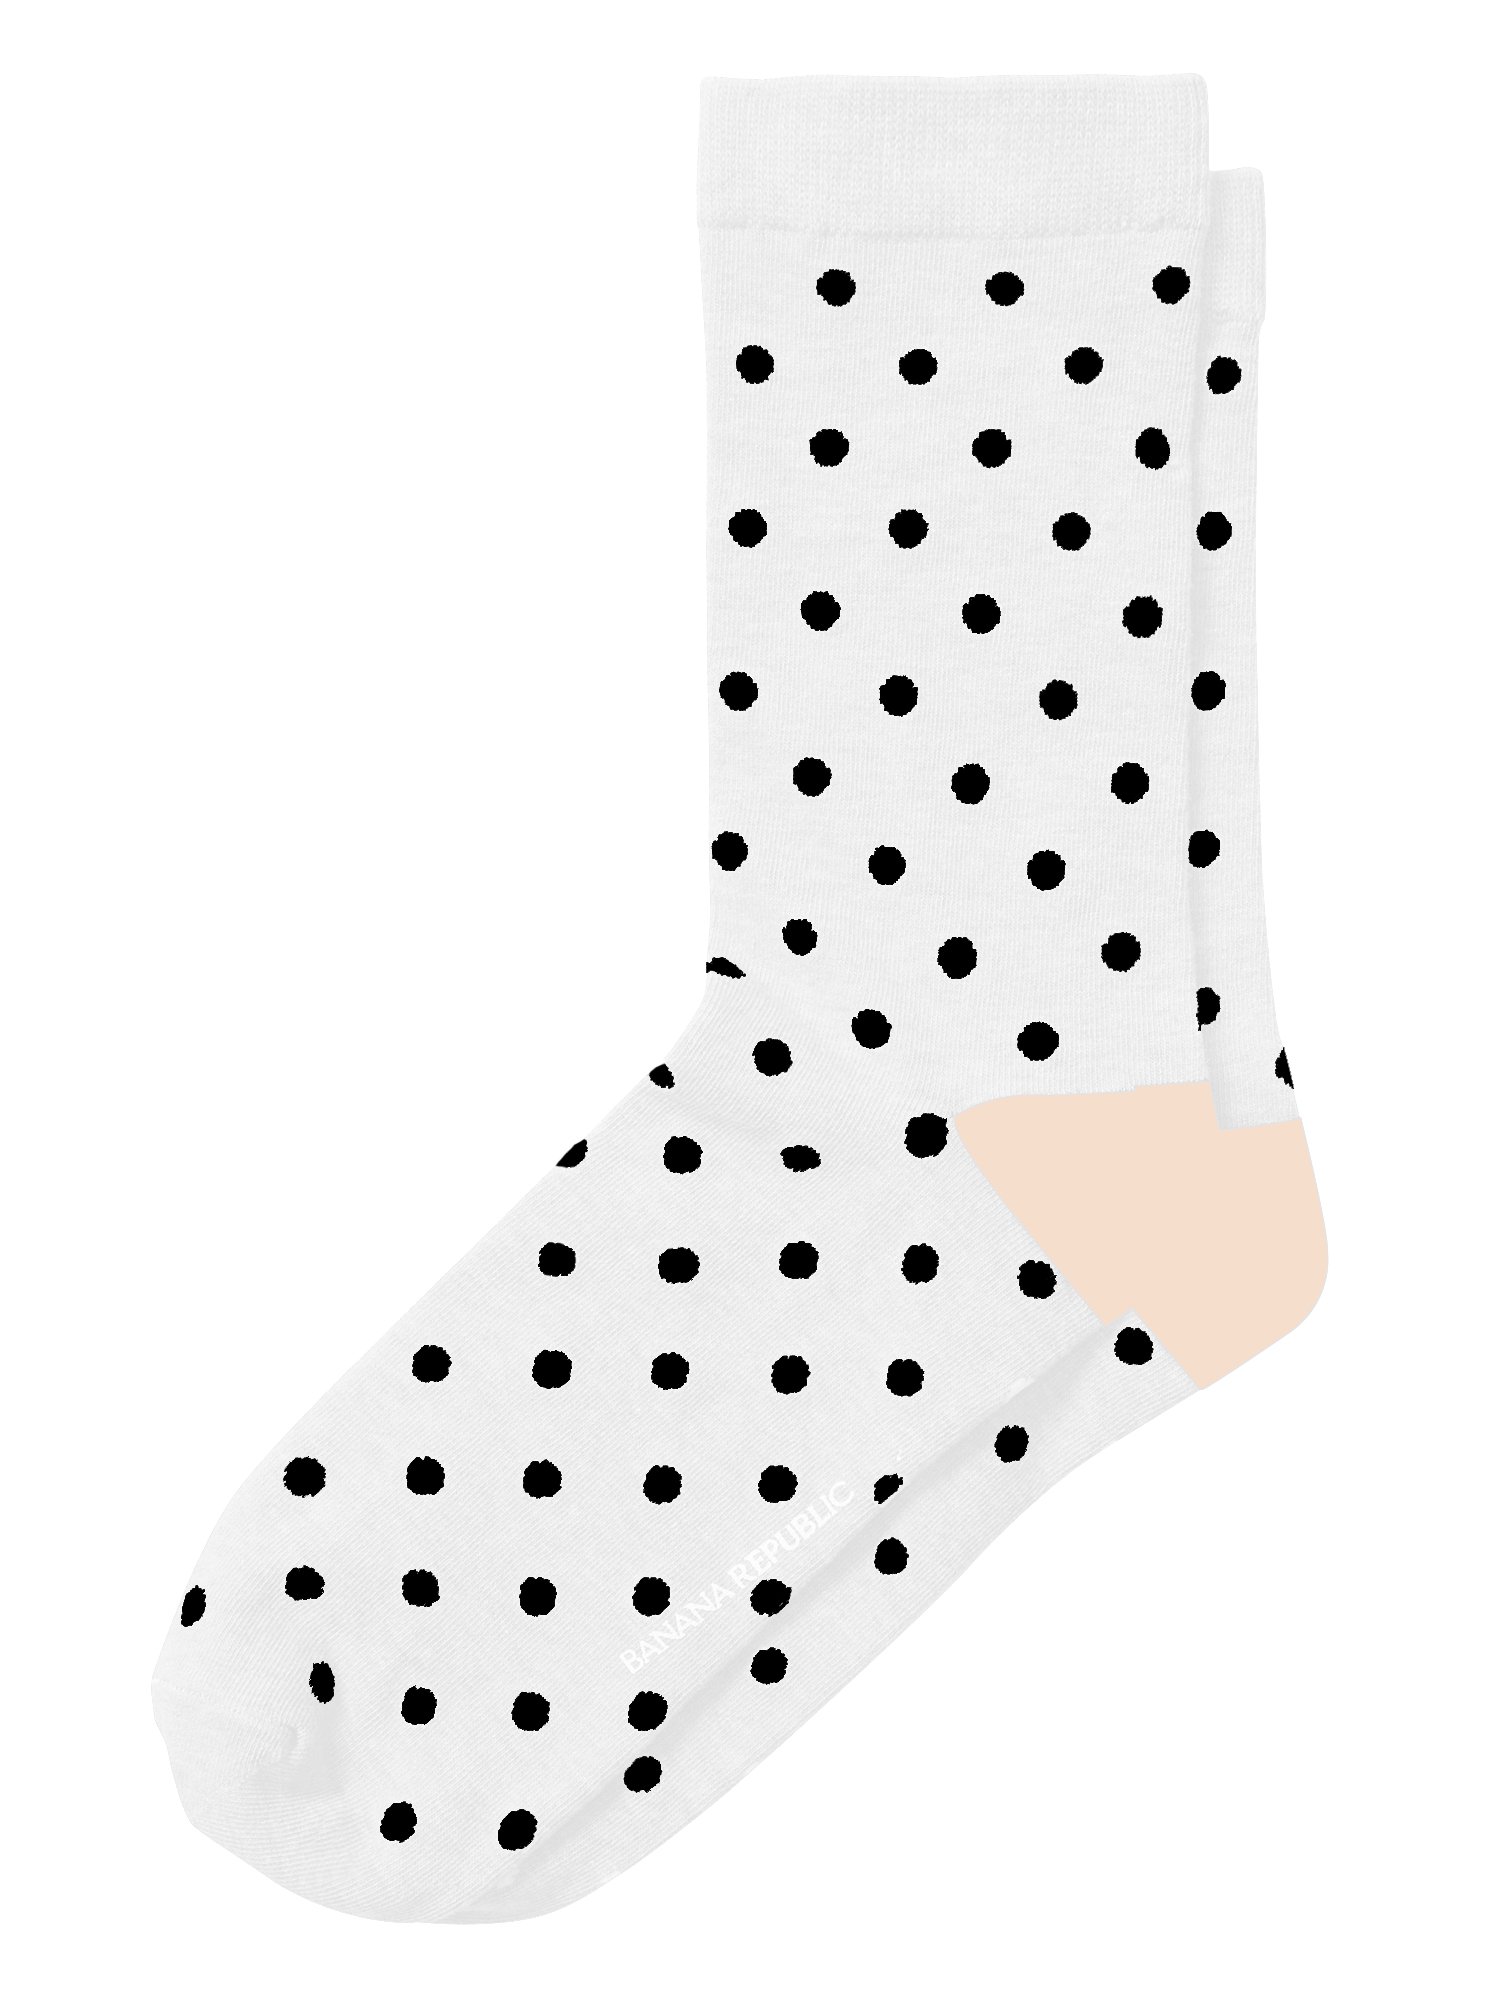 Puantiye Desenli Çorap product image